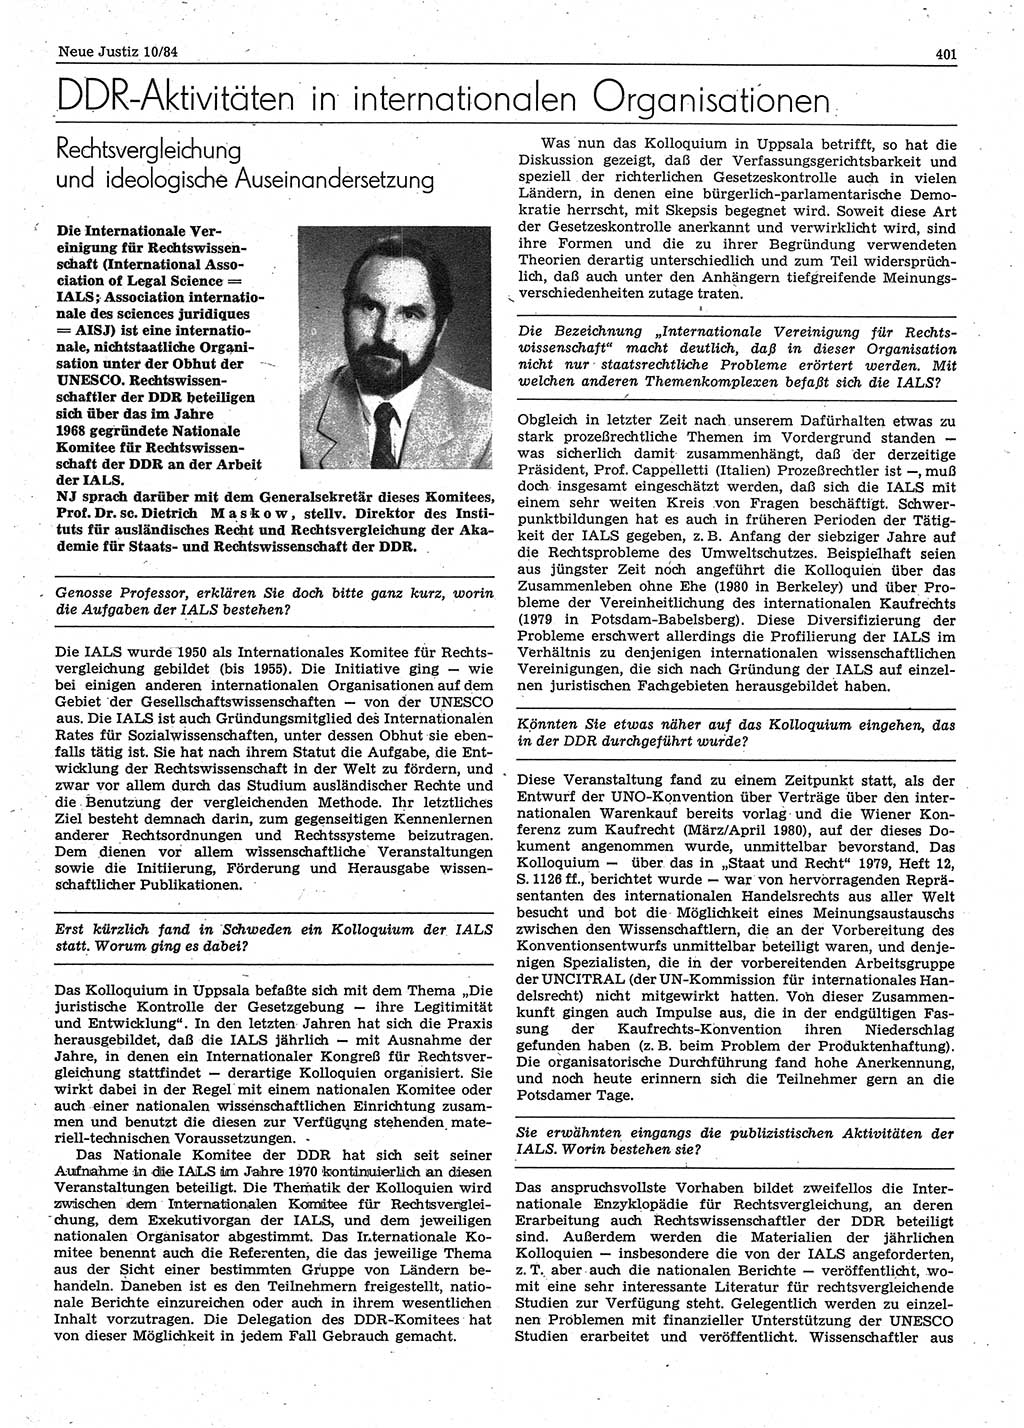 Neue Justiz (NJ), Zeitschrift für sozialistisches Recht und Gesetzlichkeit [Deutsche Demokratische Republik (DDR)], 38. Jahrgang 1984, Seite 401 (NJ DDR 1984, S. 401)